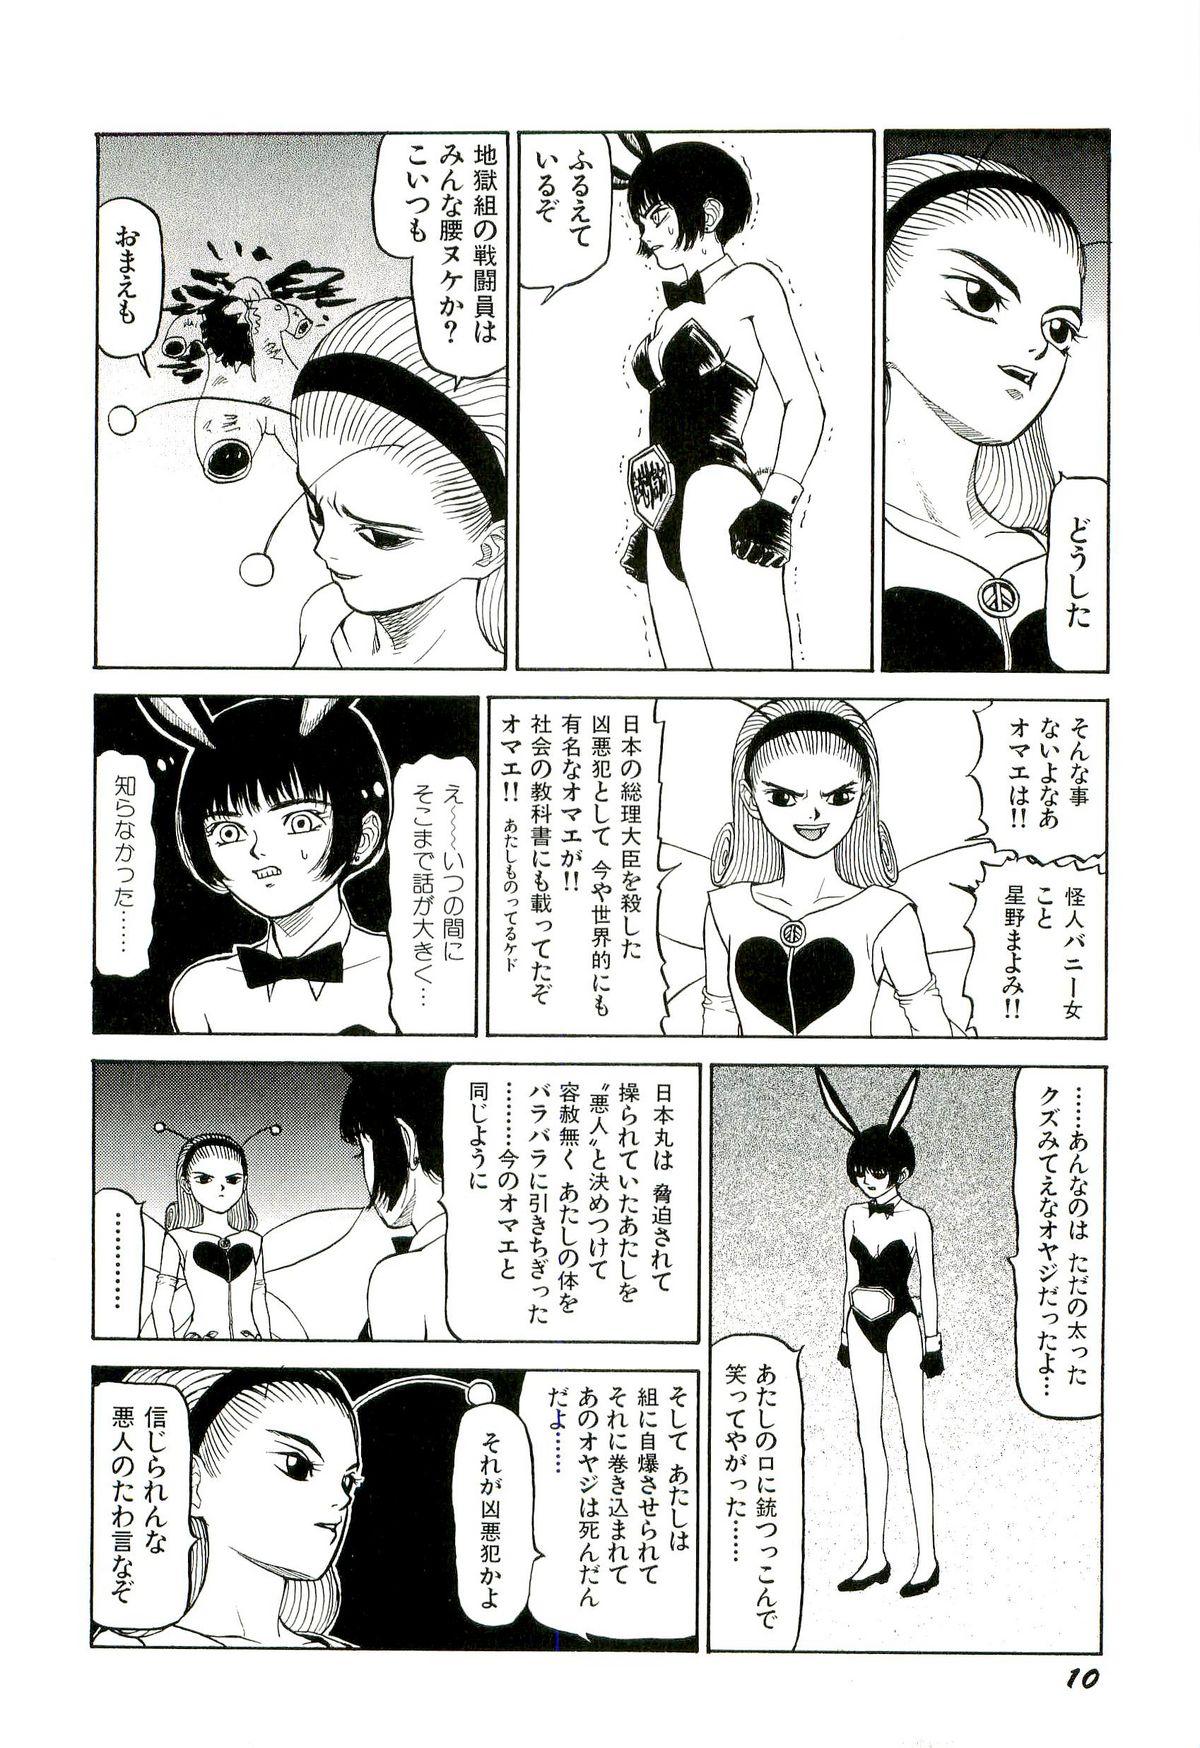 Best Blow Jobs Ever Jigokugumi no Onna 2 Babysitter - Page 11